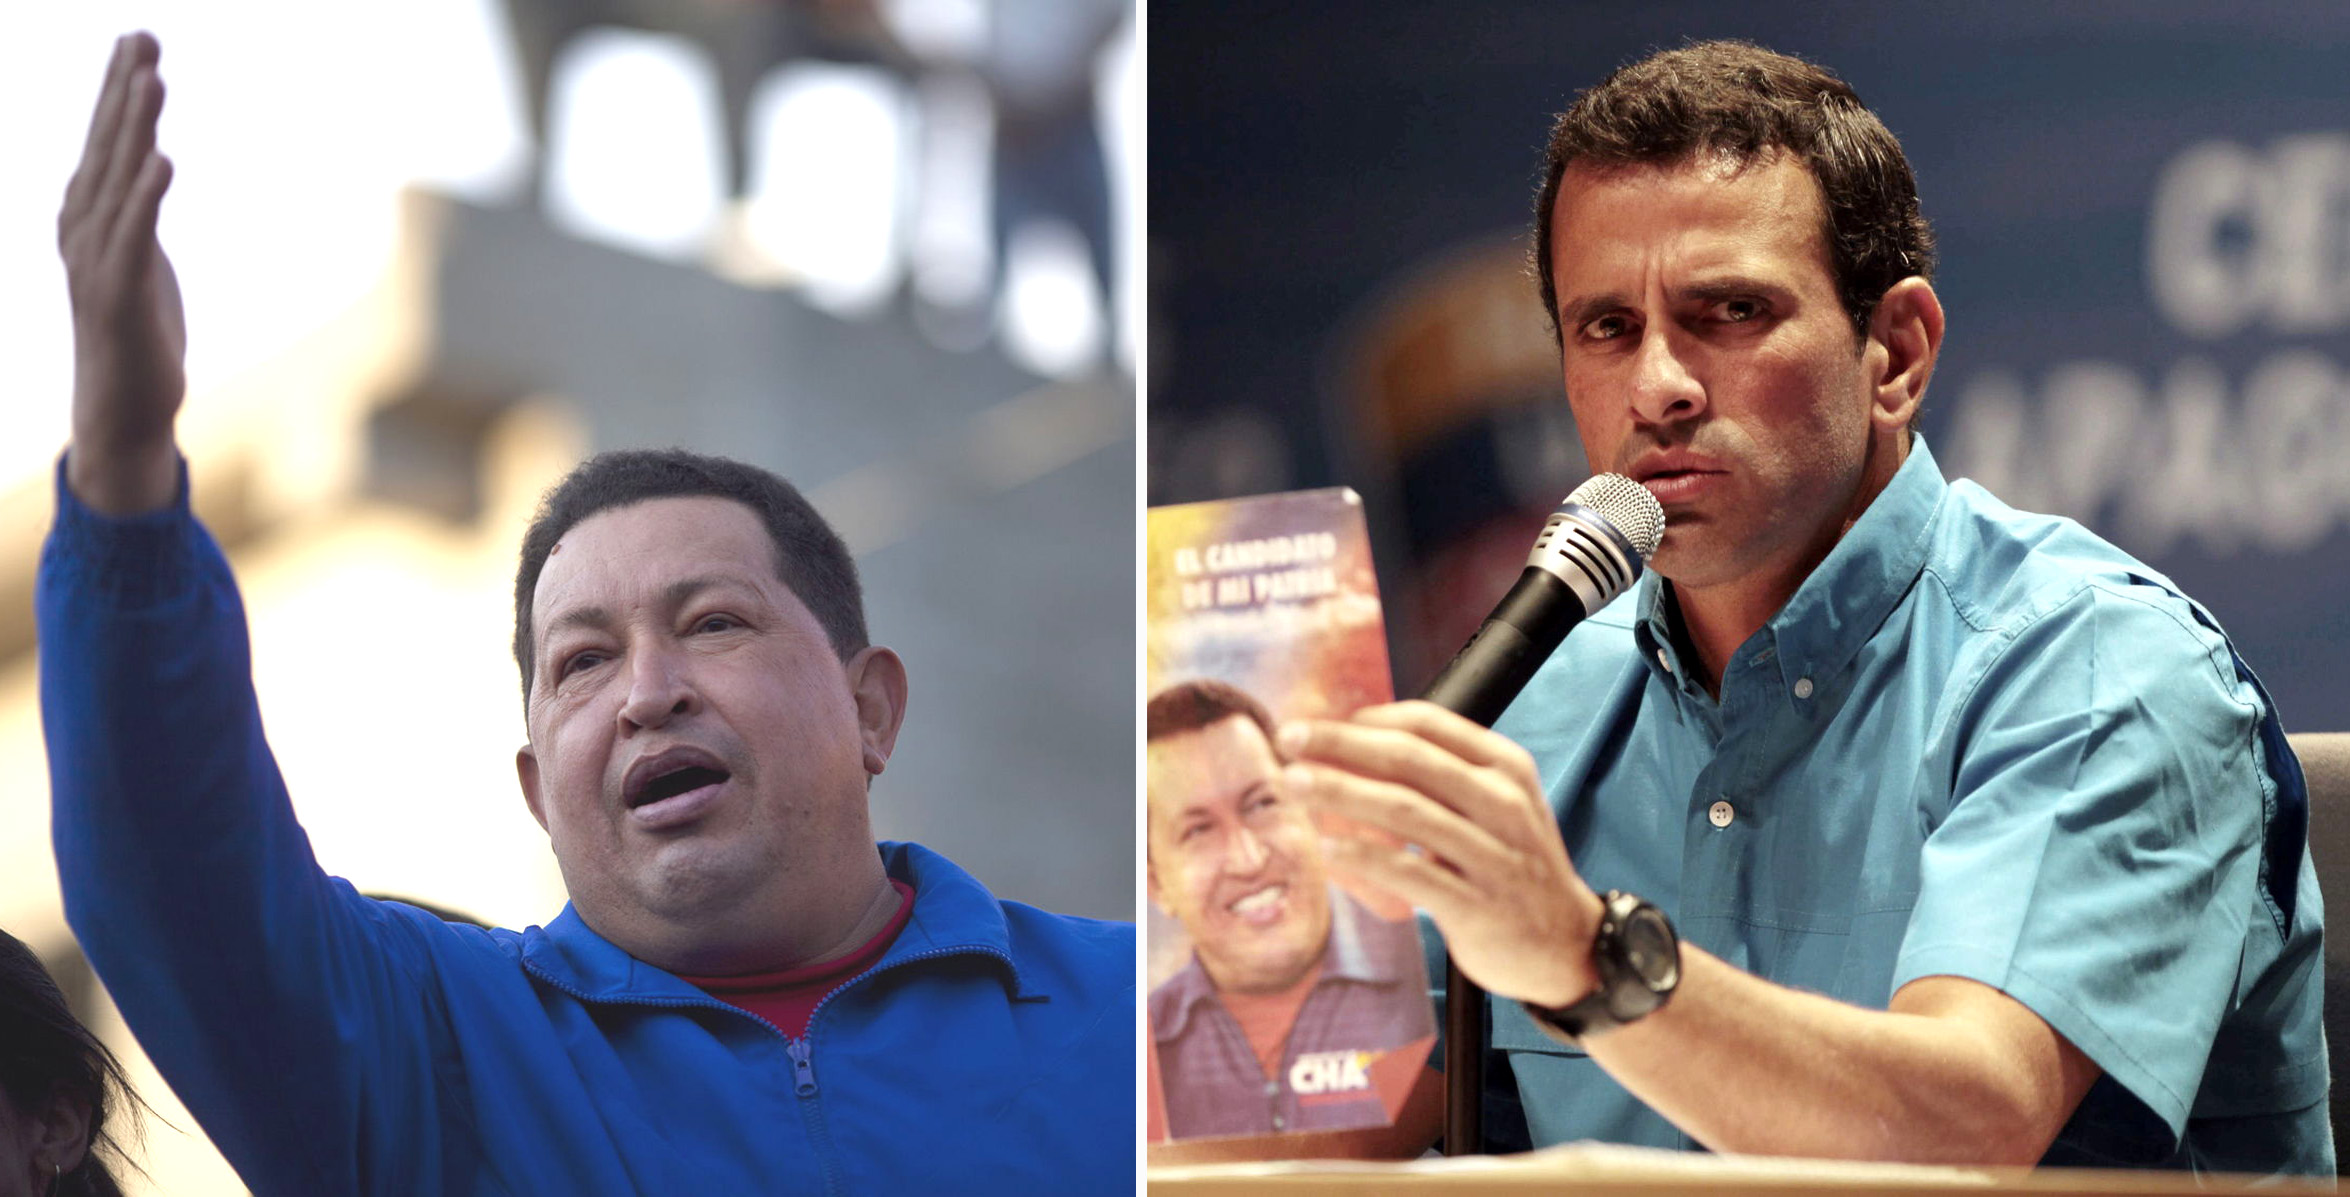 Venezuela: Miedo, factor invisible y silencioso en elecciones